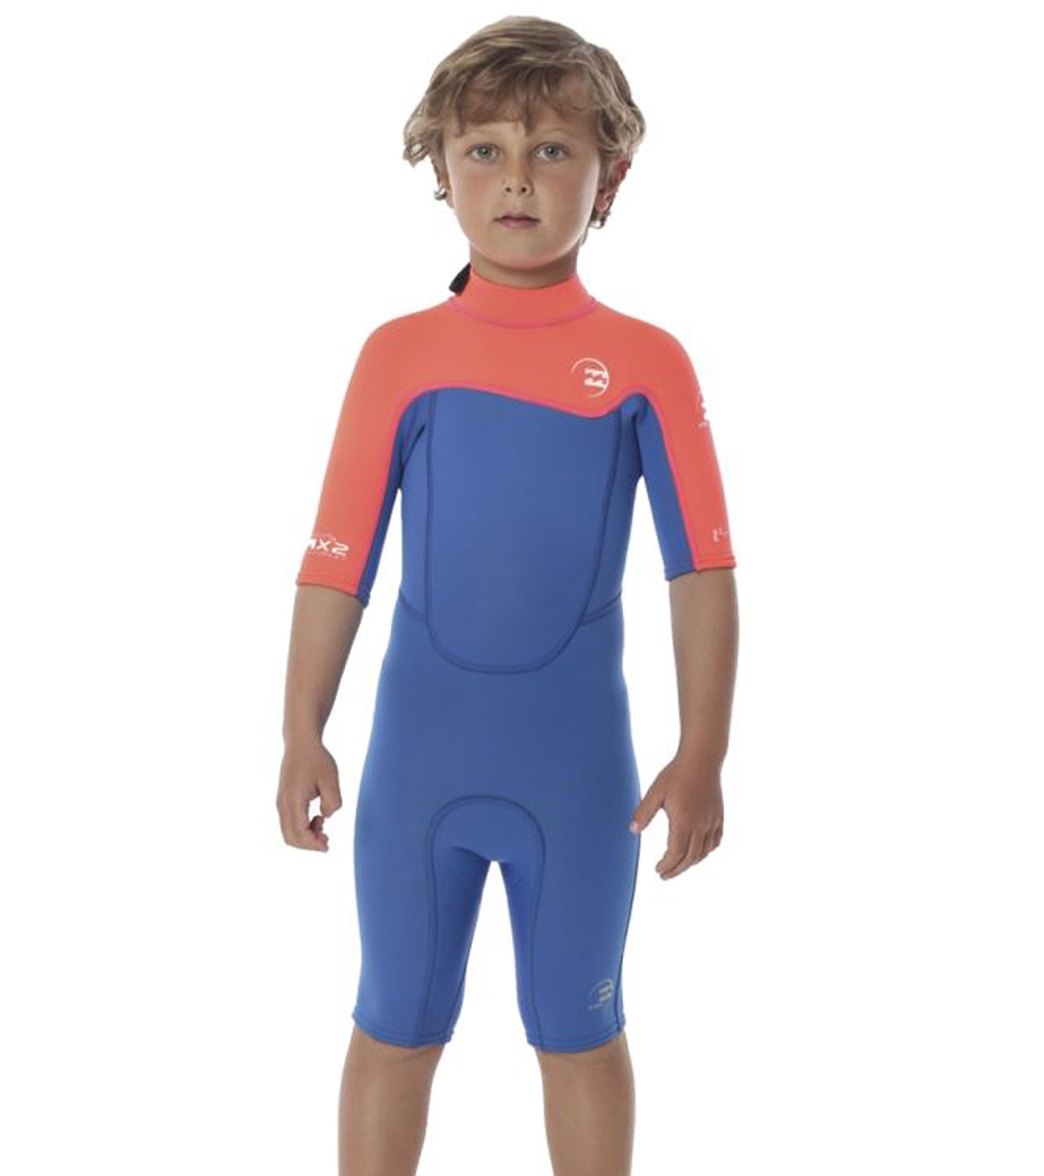 Billabong Toddler Boys' 2MM Foil Back Zip Spring Suit Wetsuit at ...